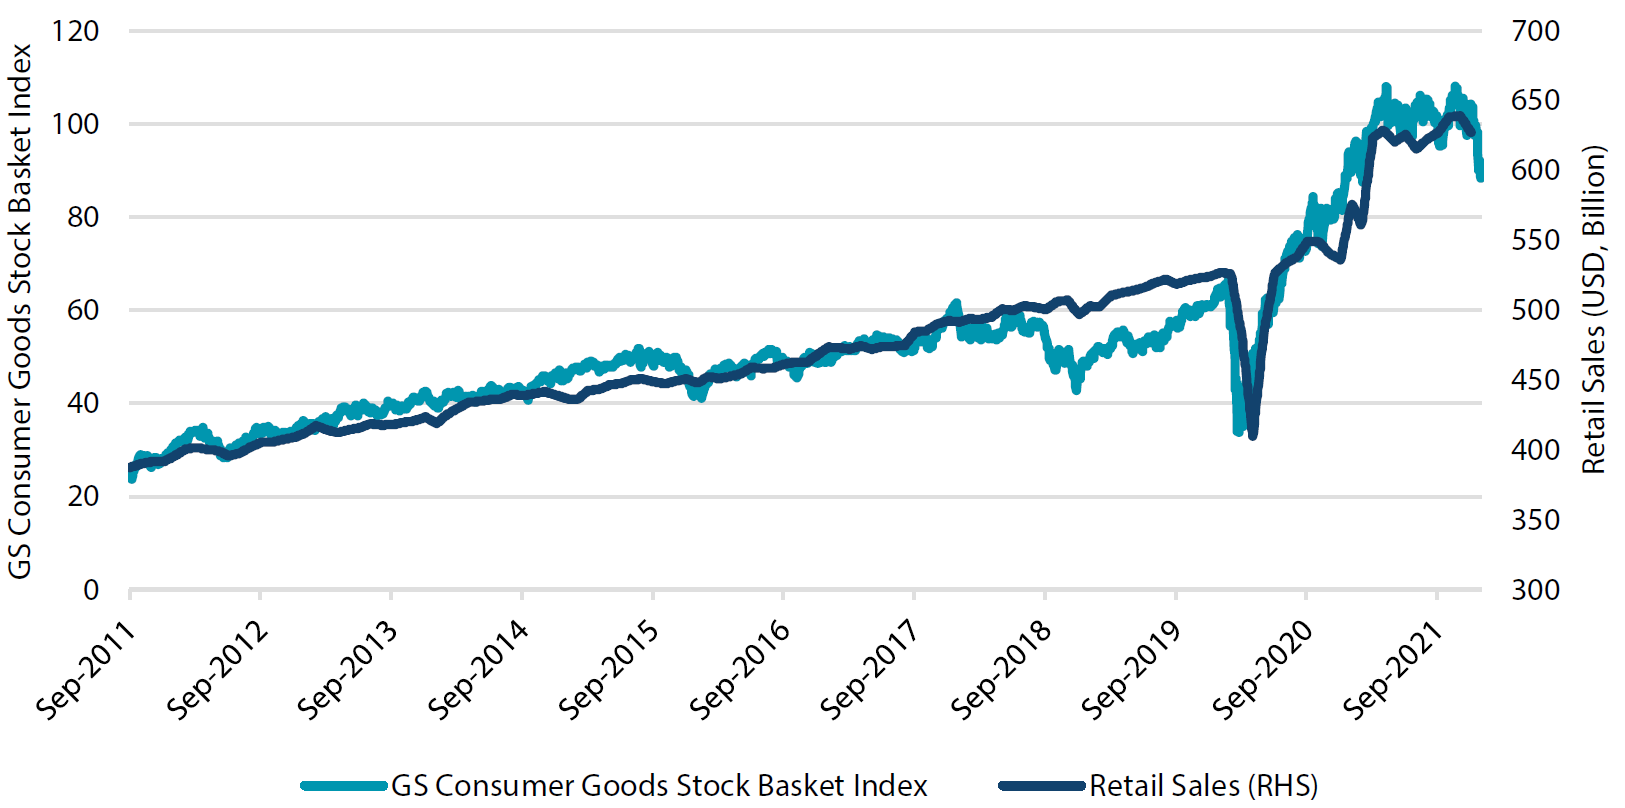 Retail sales versus consumer goods stocks